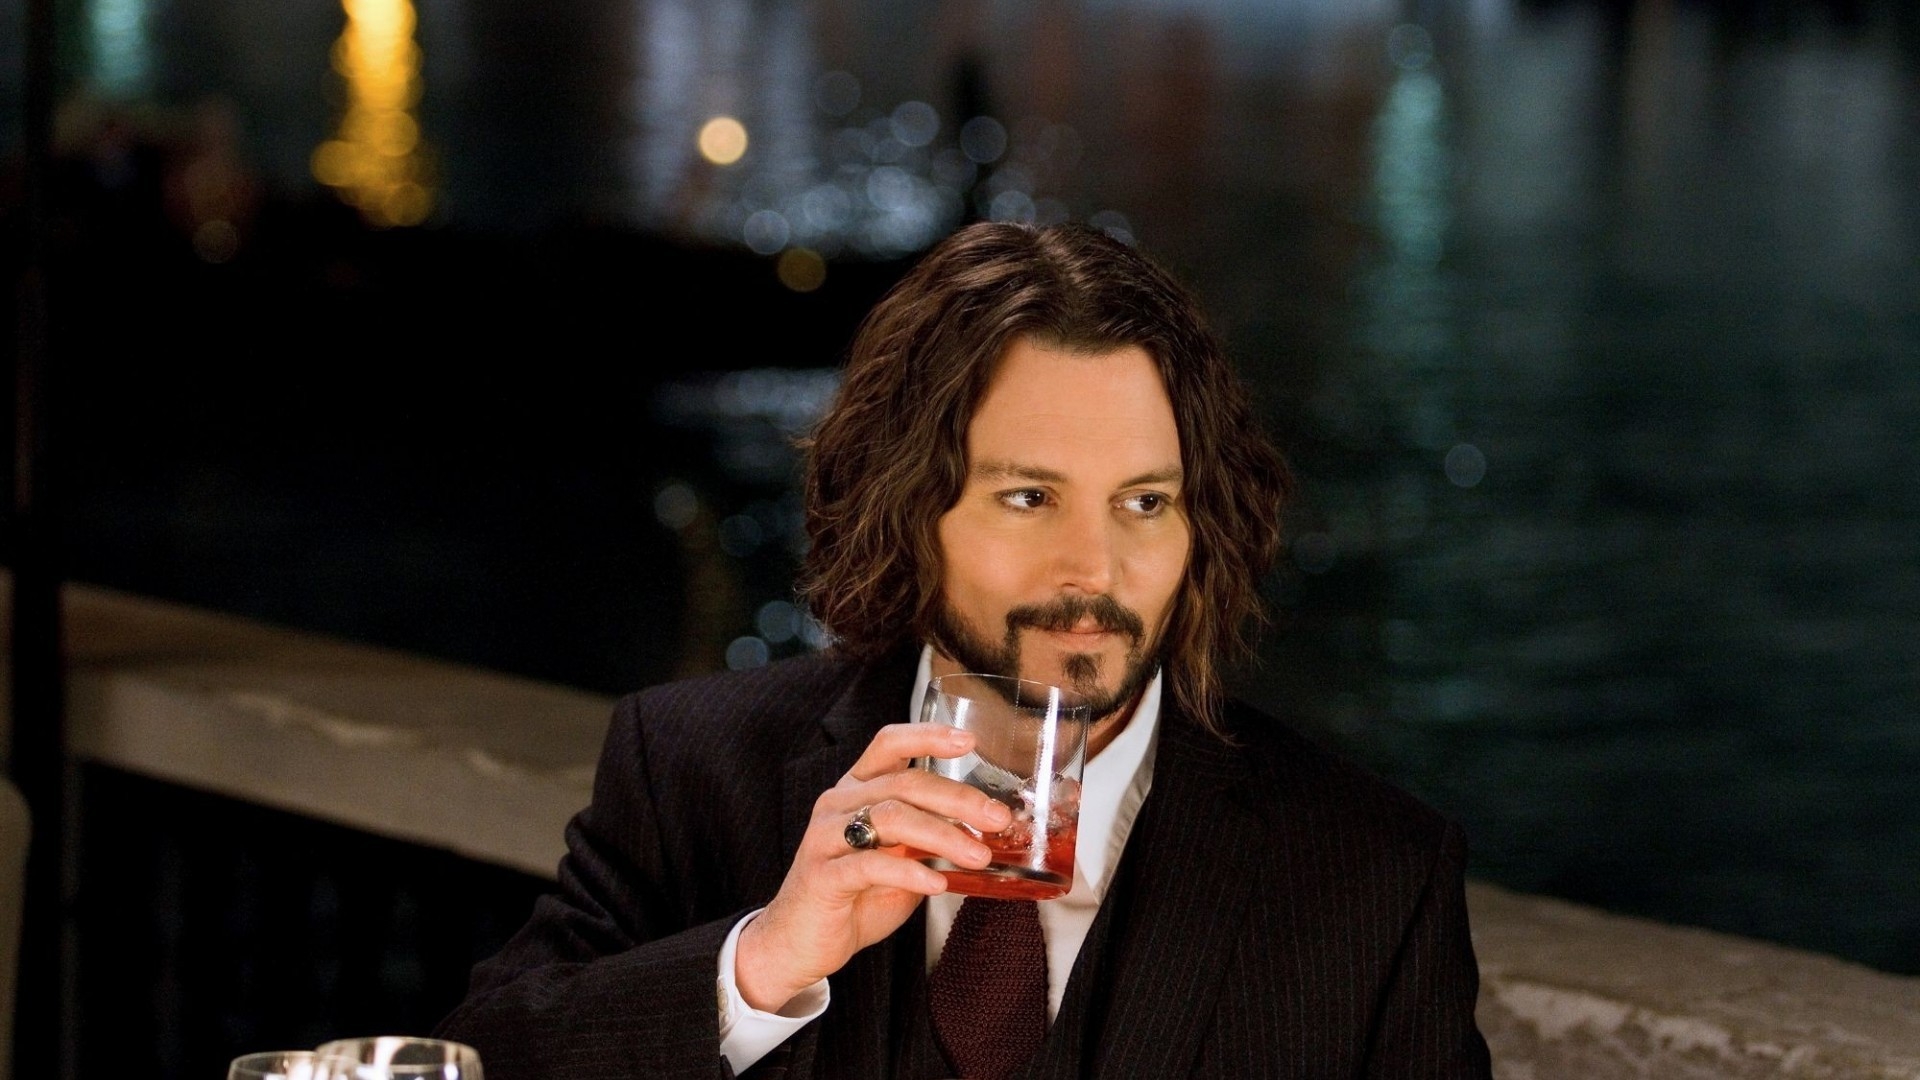 Johnny Depp Drinking for 1920 x 1080 HDTV 1080p resolution